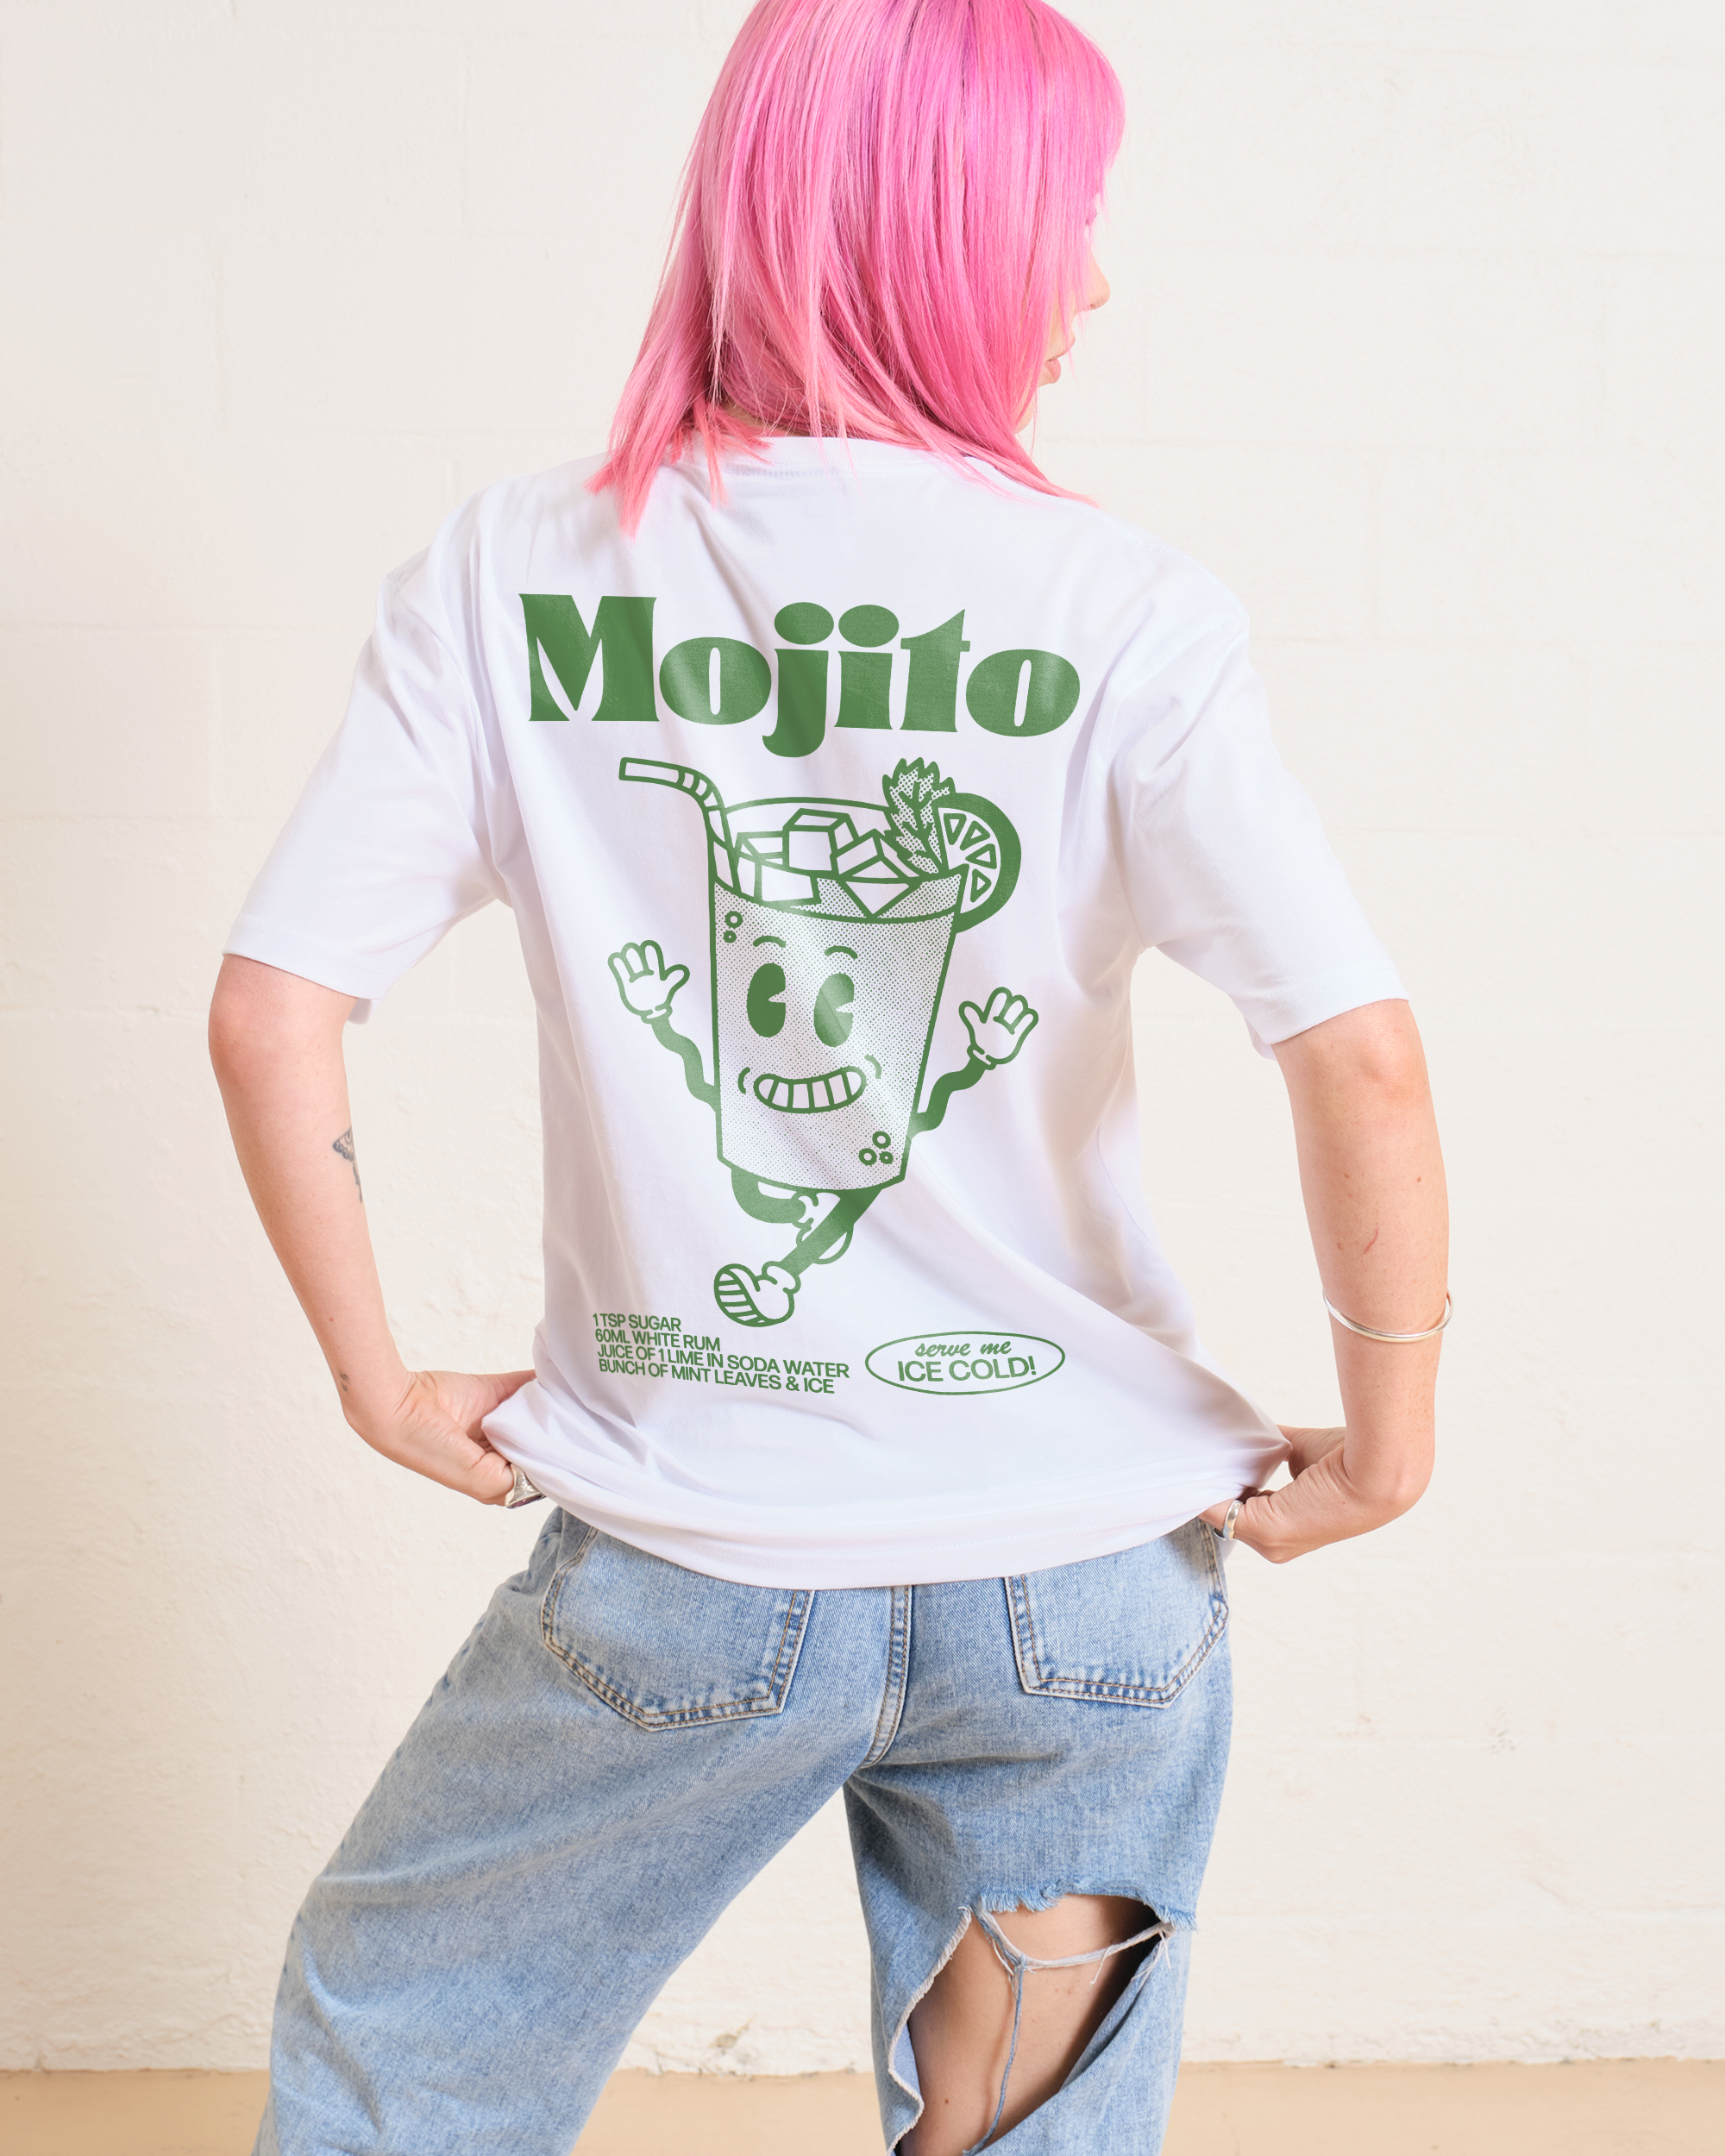 Mojito T-Shirt